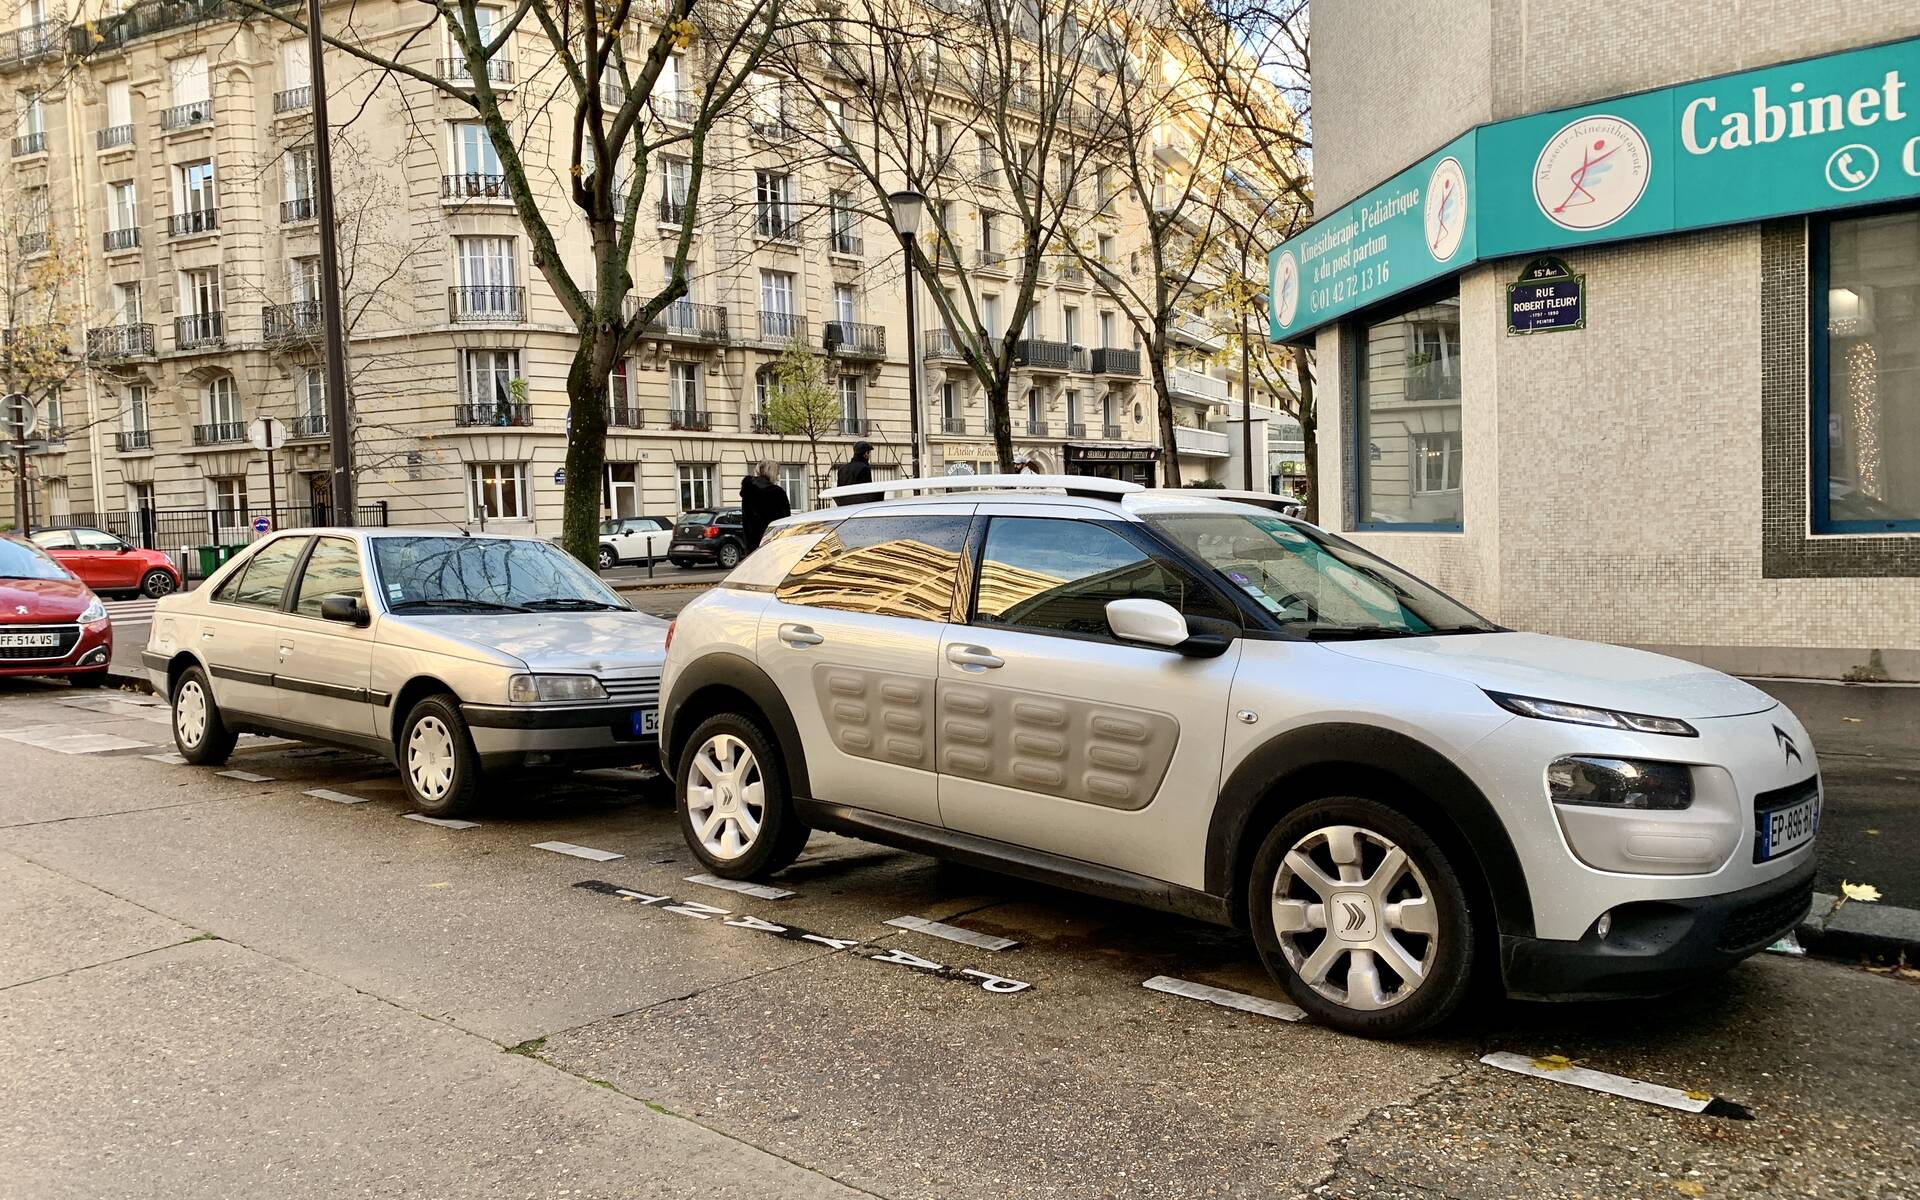 [Photos] Les véhicules dignes de mention croisés en France 505656-photos-les-vehicules-dignes-de-mention-croises-en-france